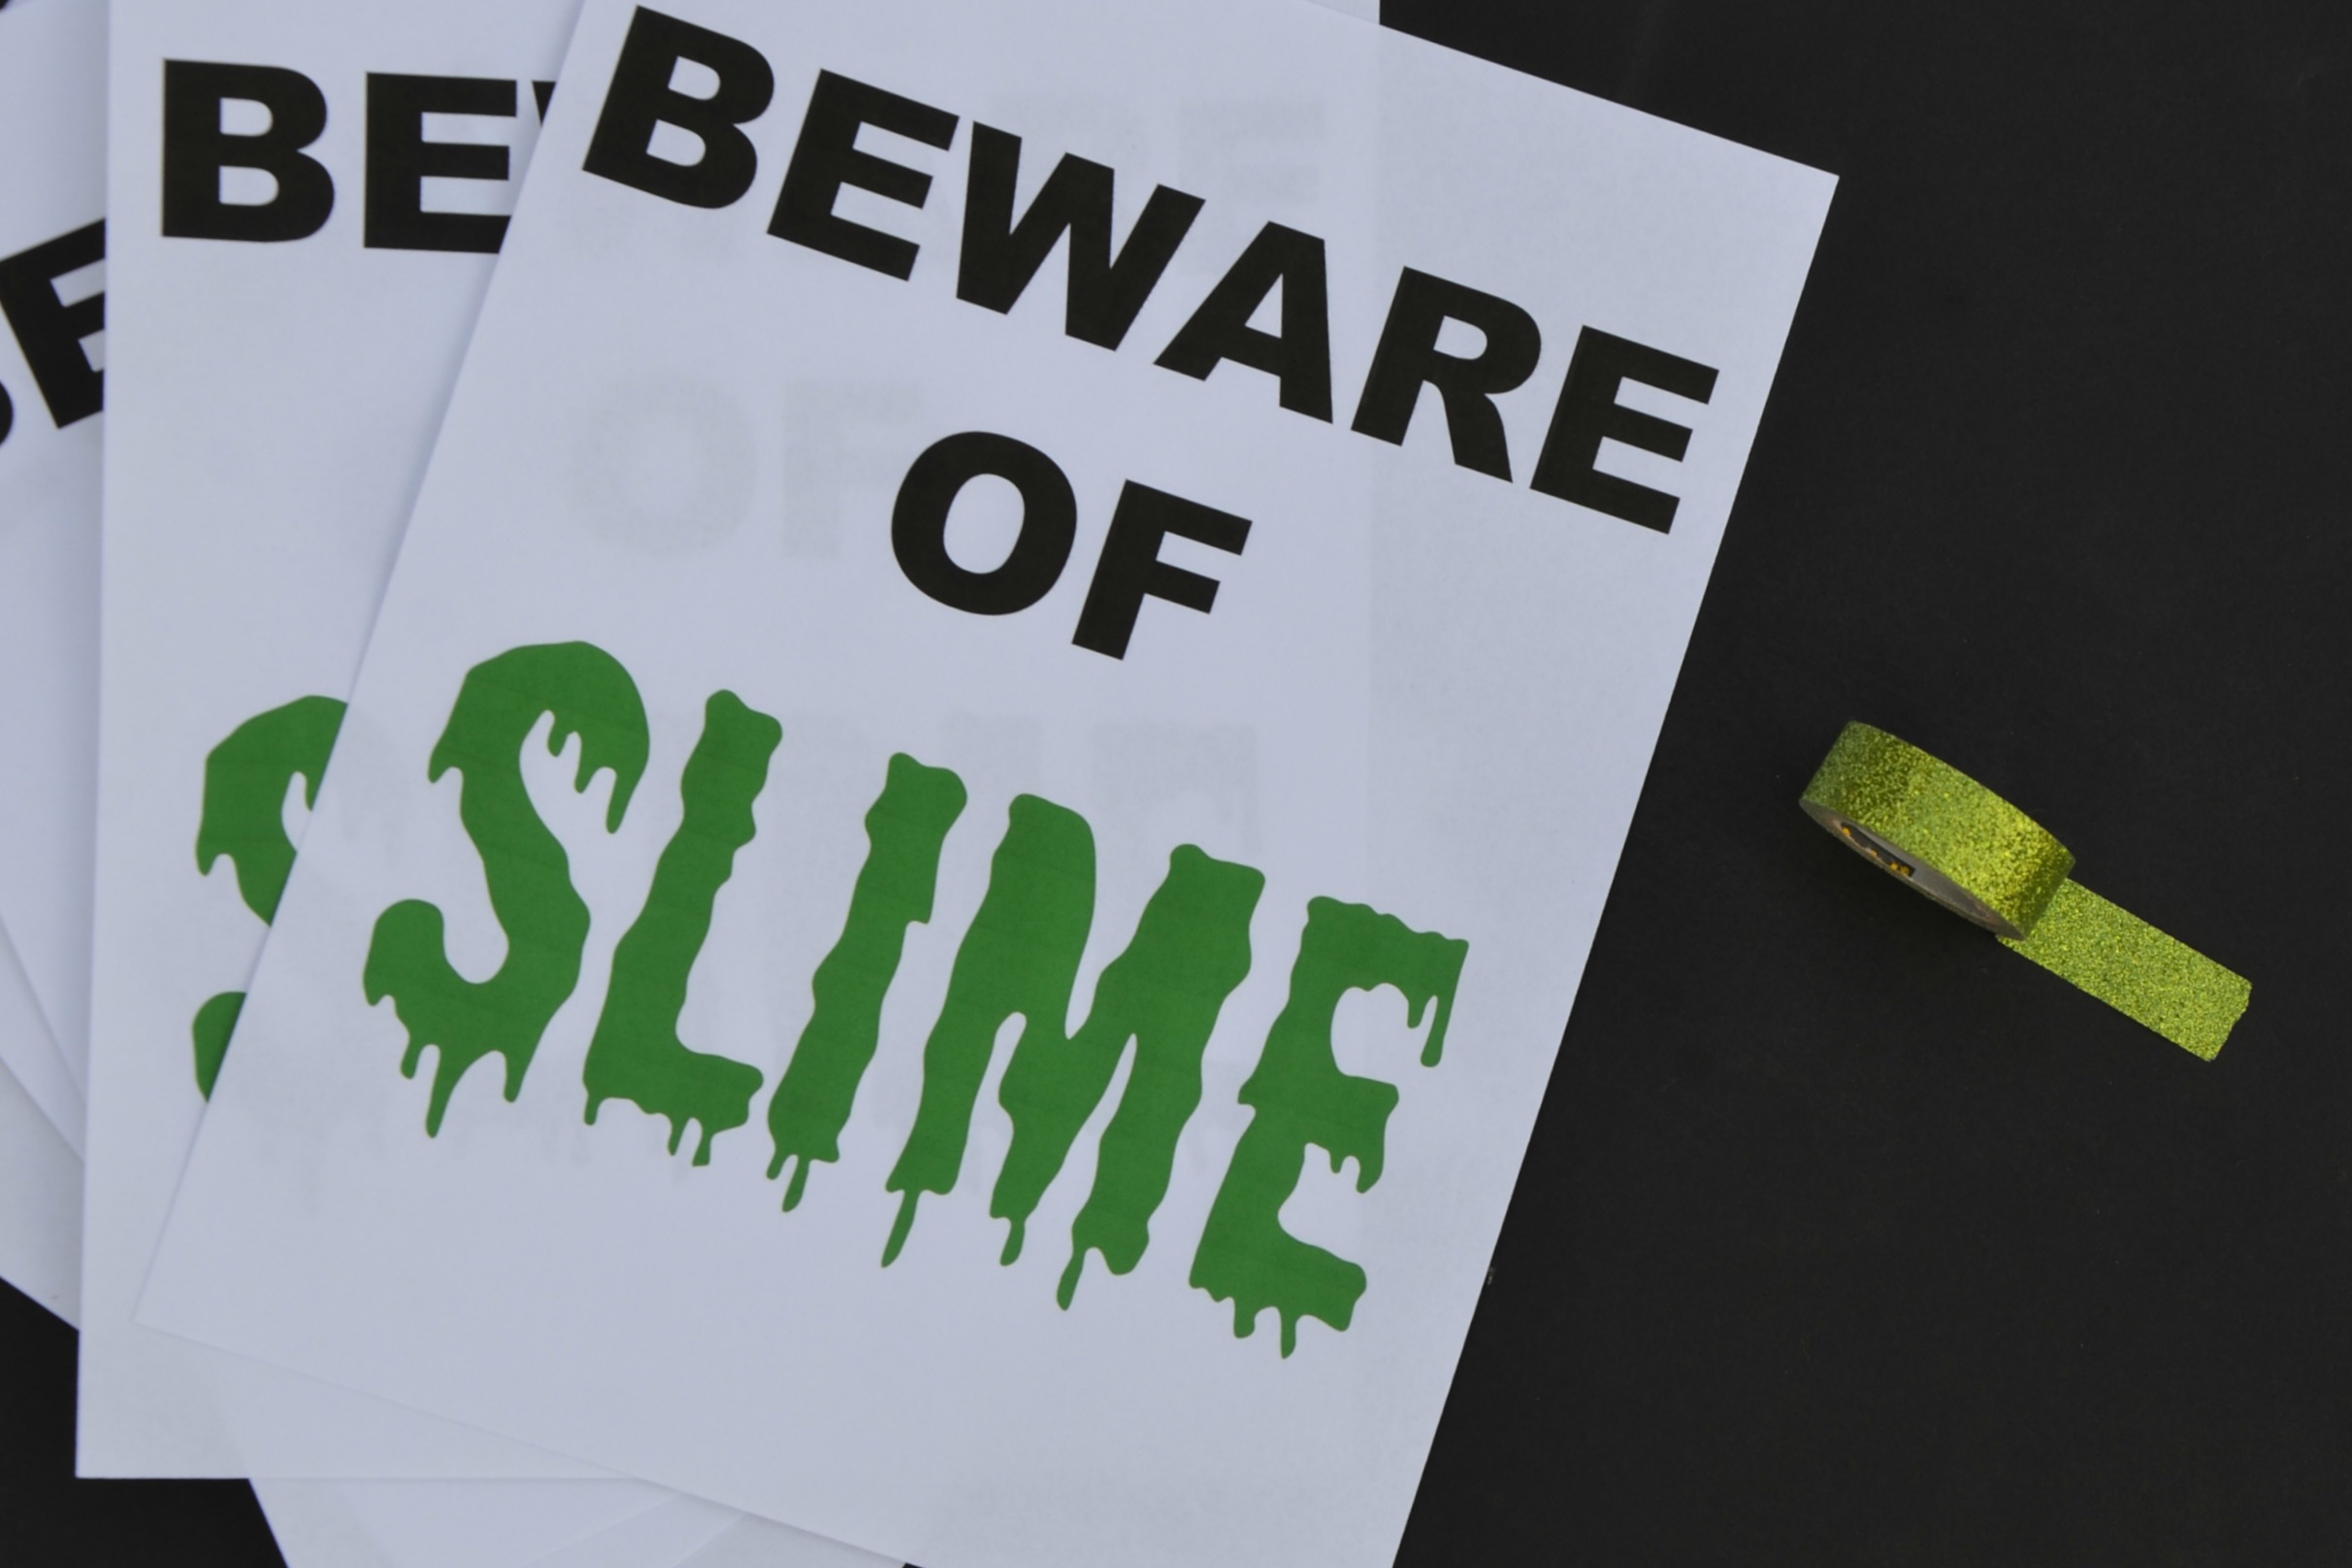 Slimer Party Beware of Slime printed